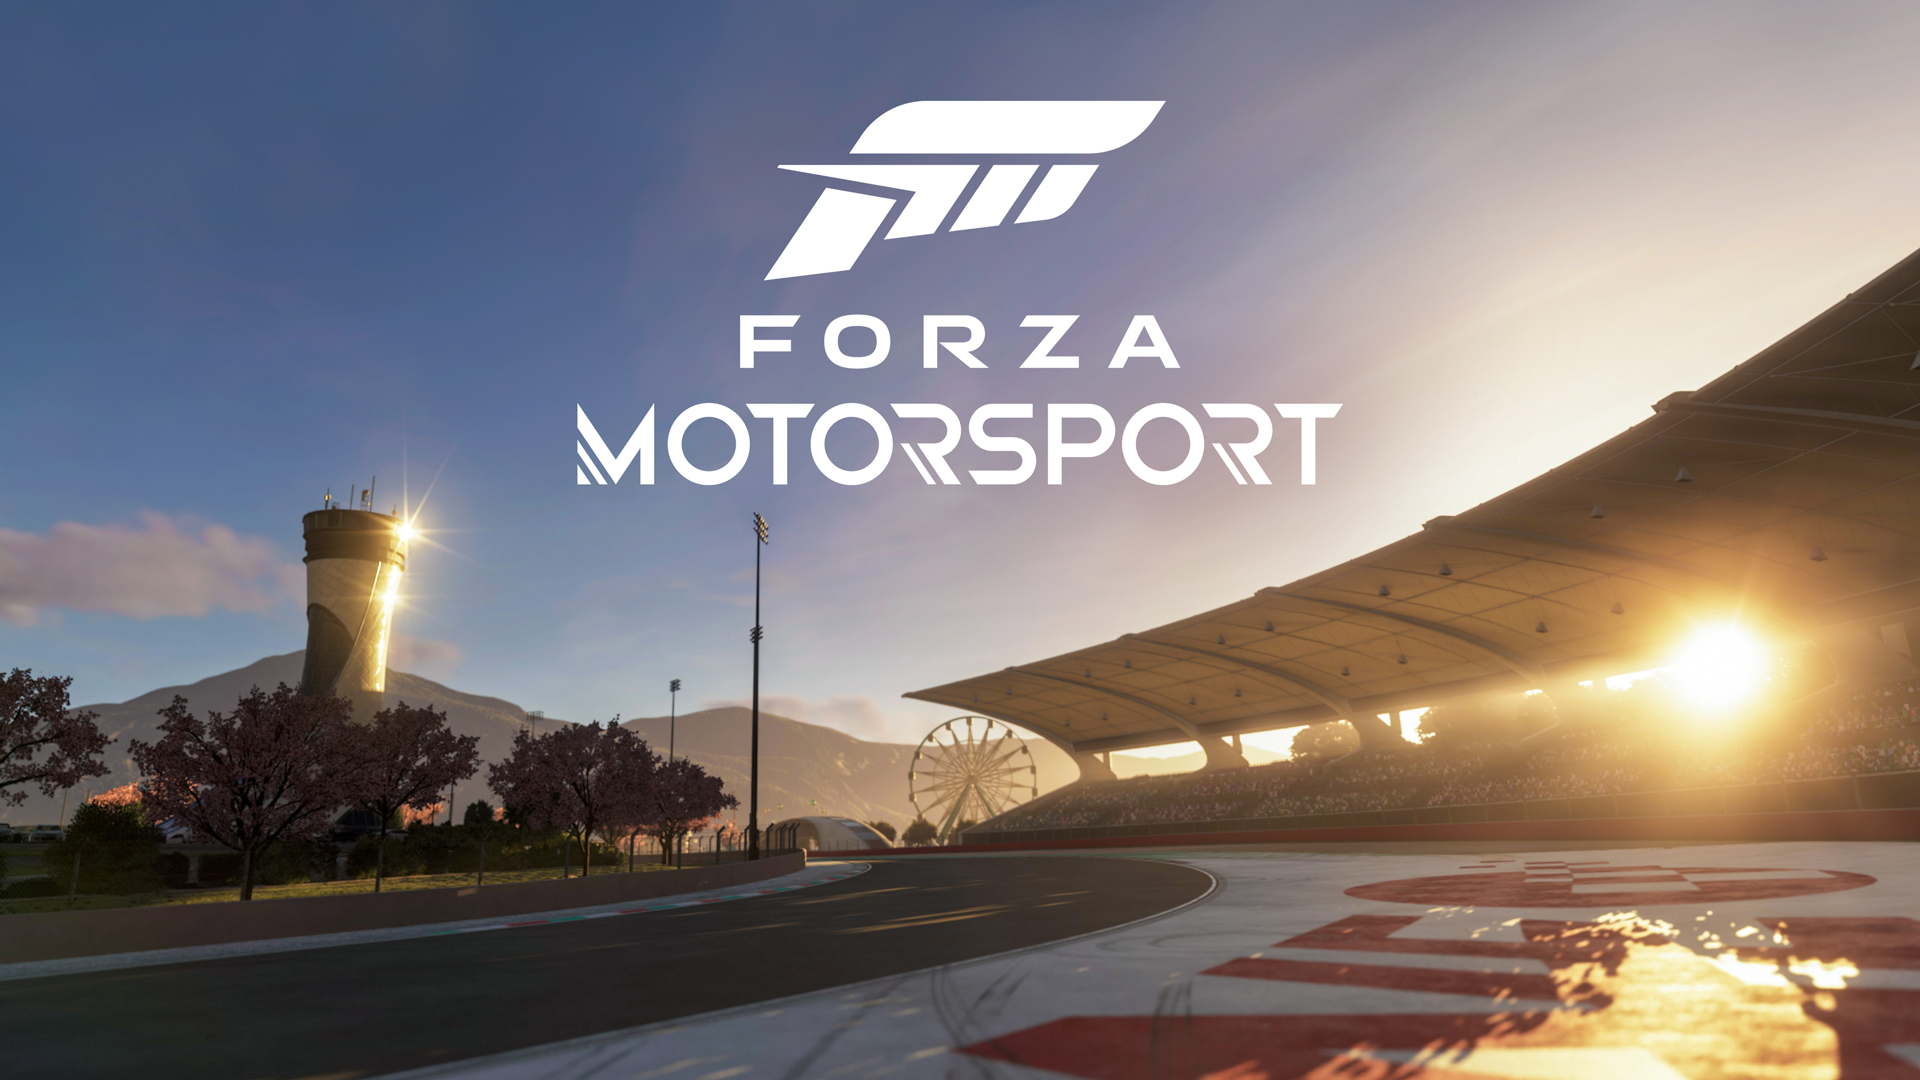 Os fãs de Forza não vão desistir do Japão como o próximo local do